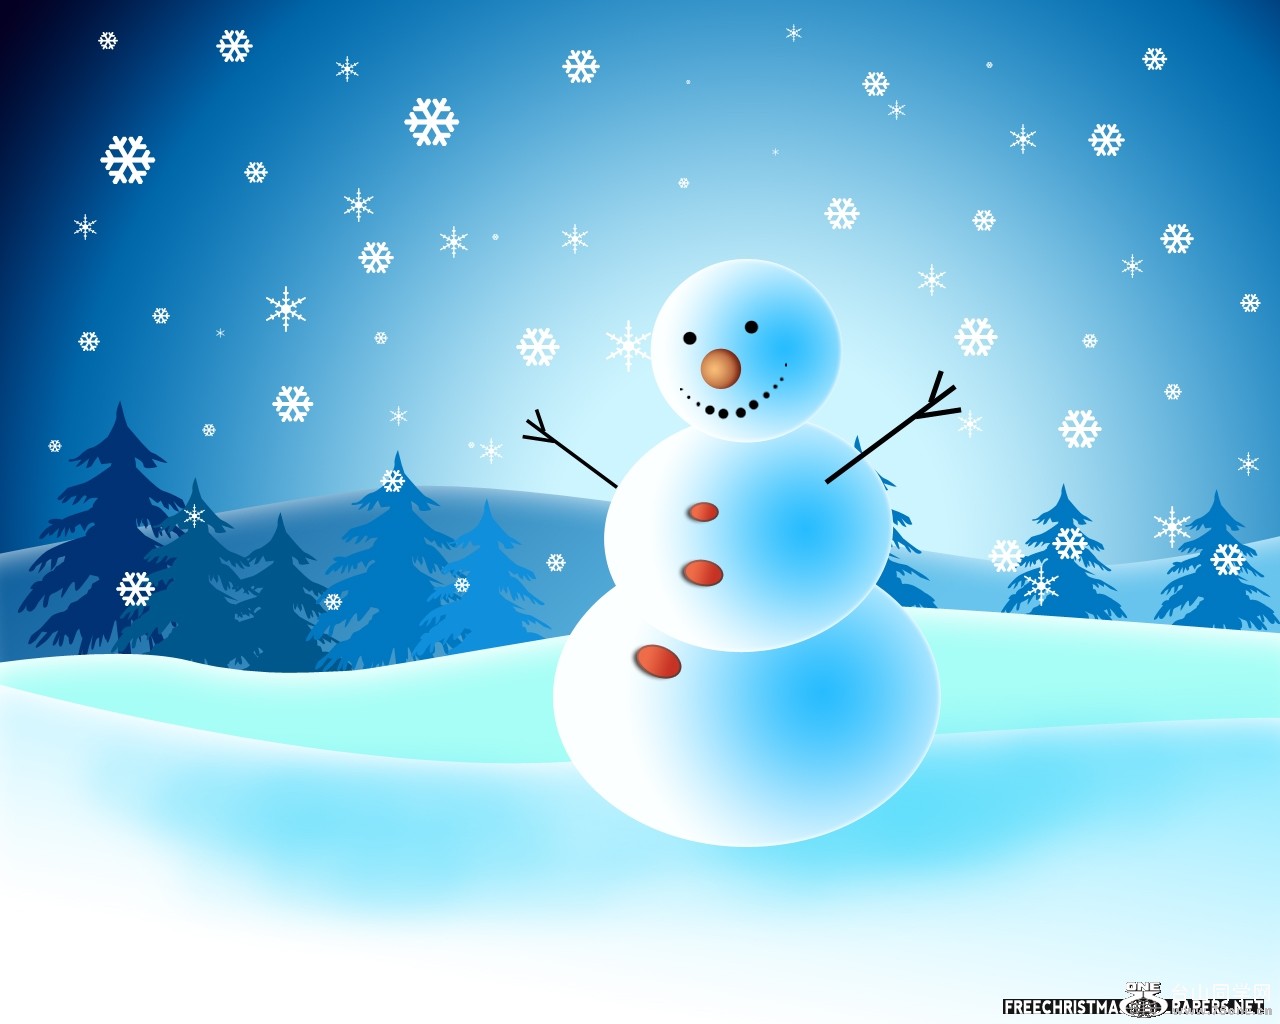 Snowman-Christmas-Card-315103.jpeg